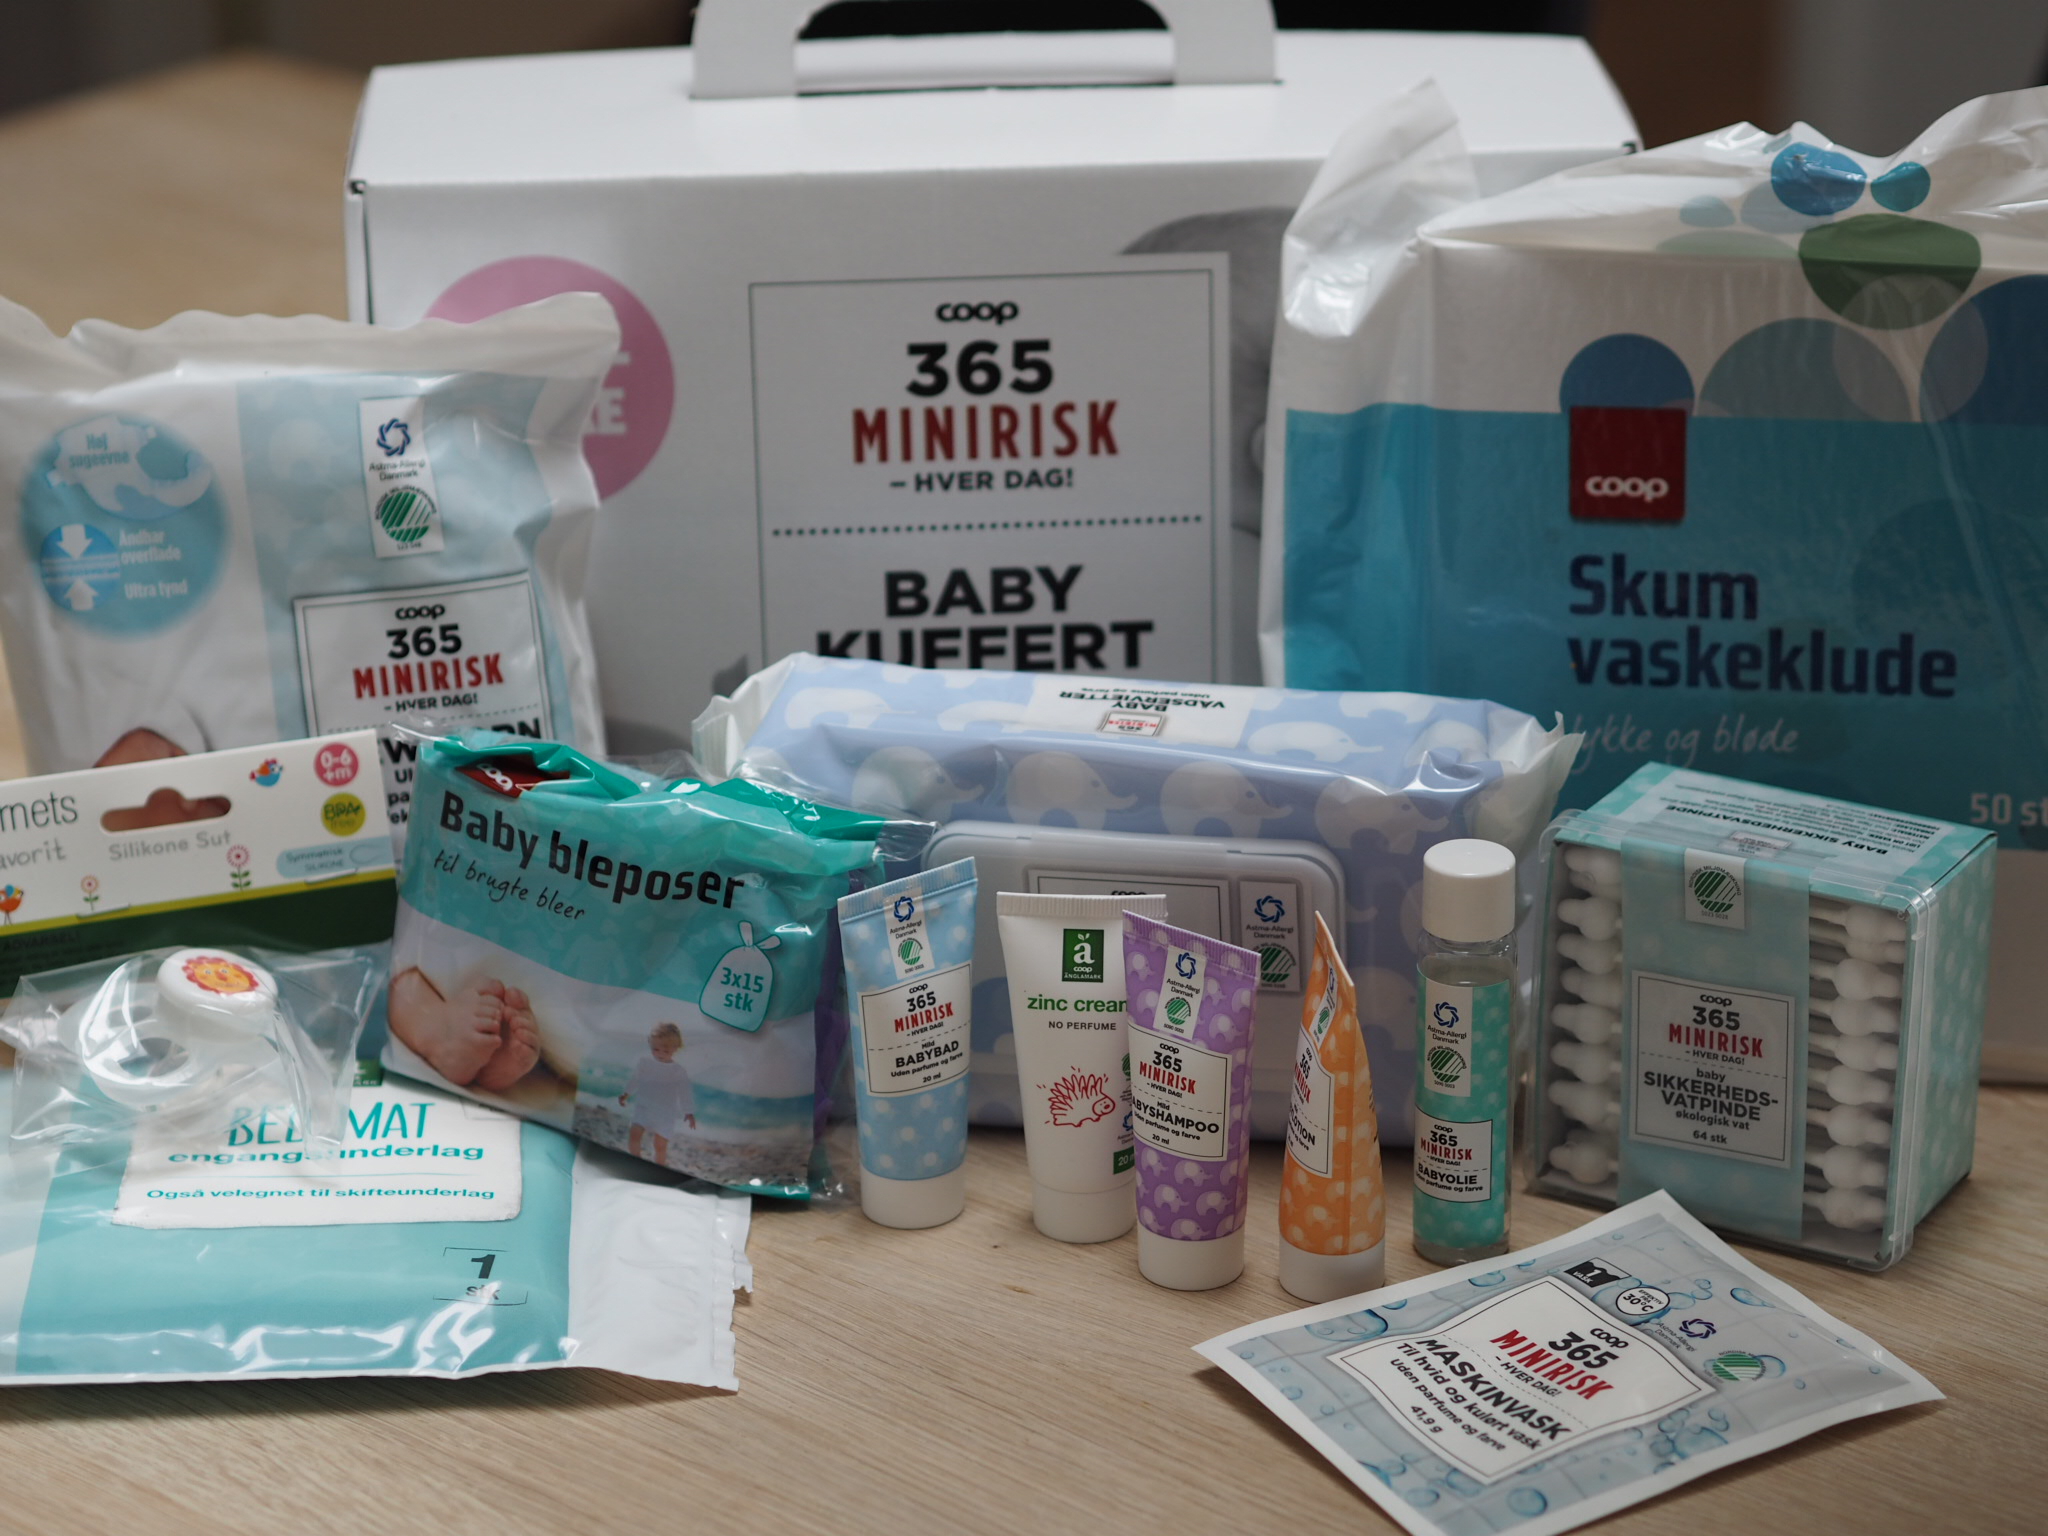 aftale Clancy respons Opdateret: De gratis babypakker - Karriere, kærlighed og krøller